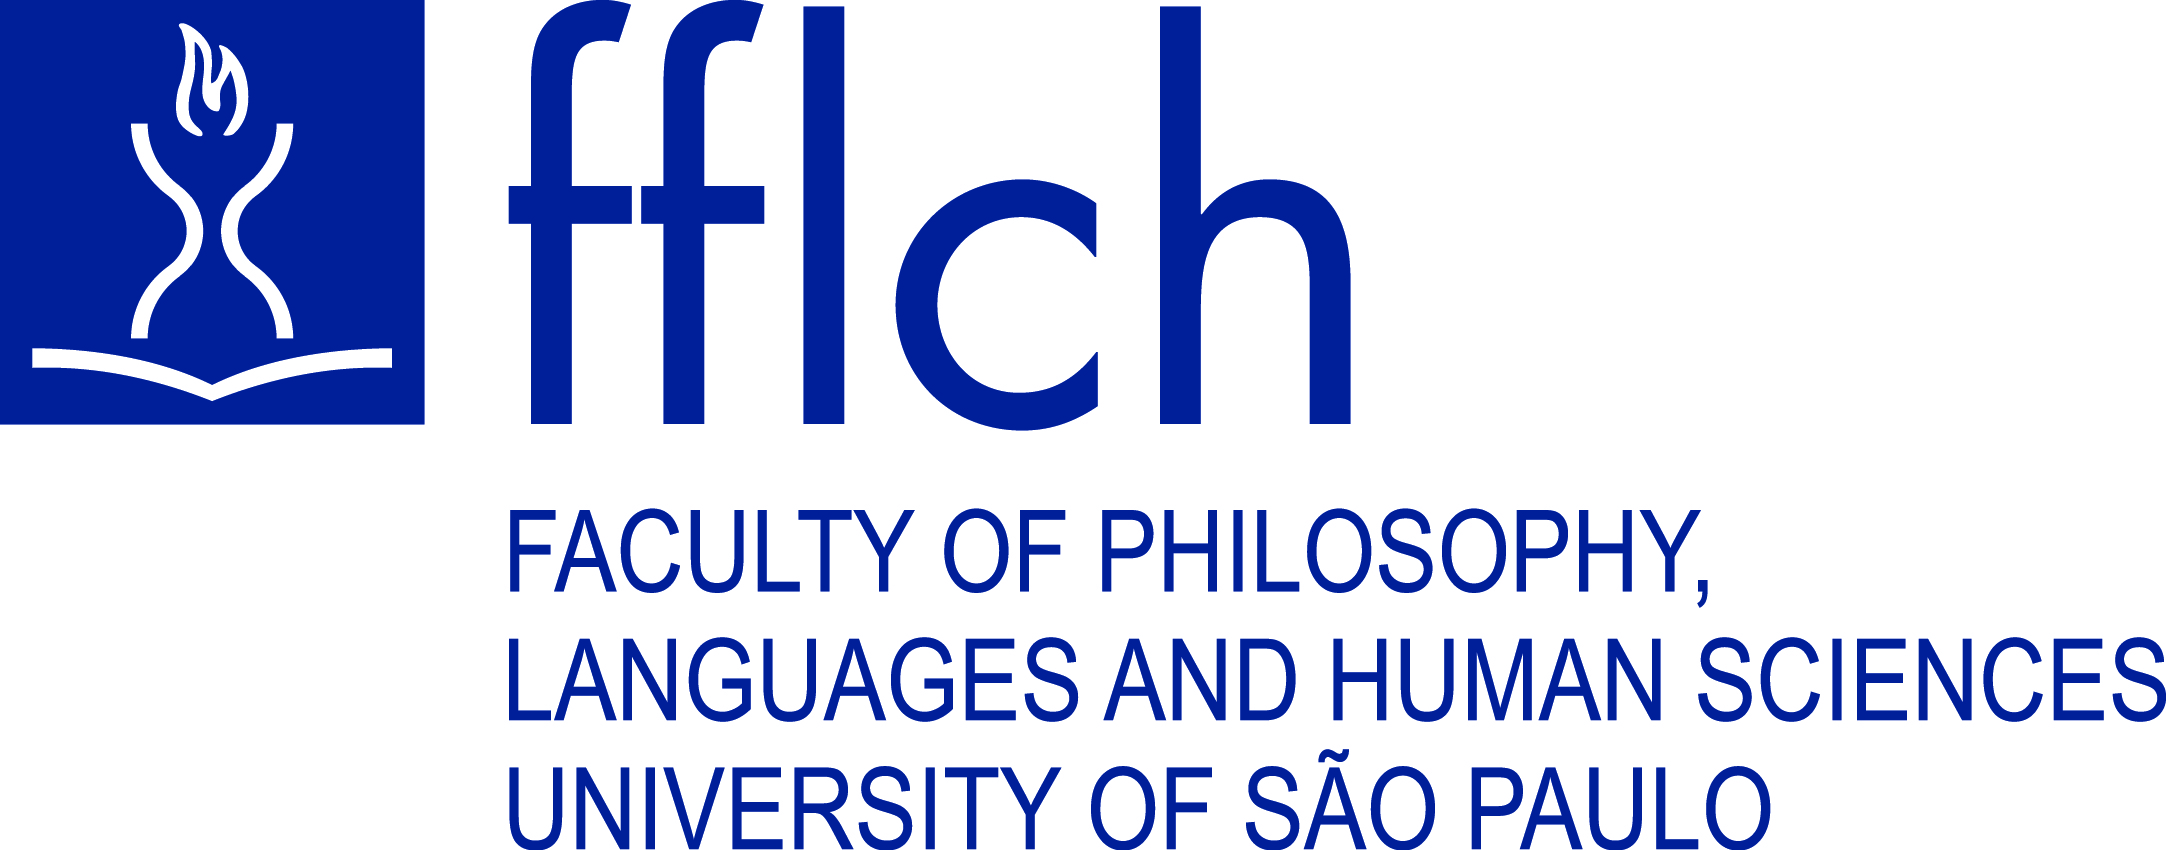 Logo em inglês da Faculdade de Filosofia, Letras e Ciências Humanas